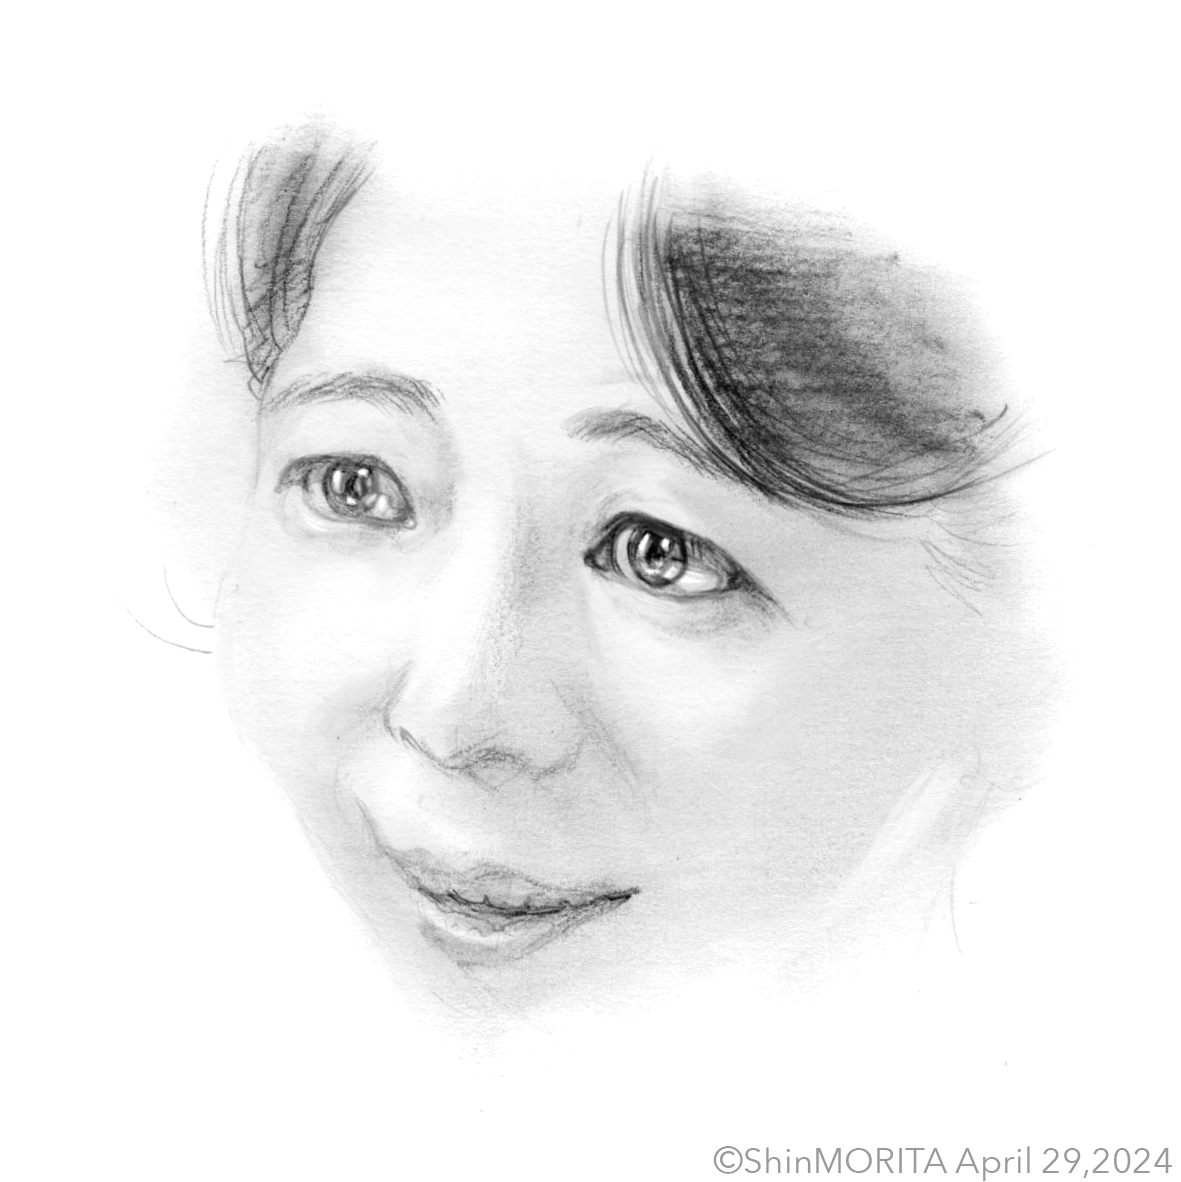 「どれもあなたよ」
梅子さんを描きました。 
#平岩紙 さん 
#虎に翼 #トラつば #トラつば絵
@asadora_nhk